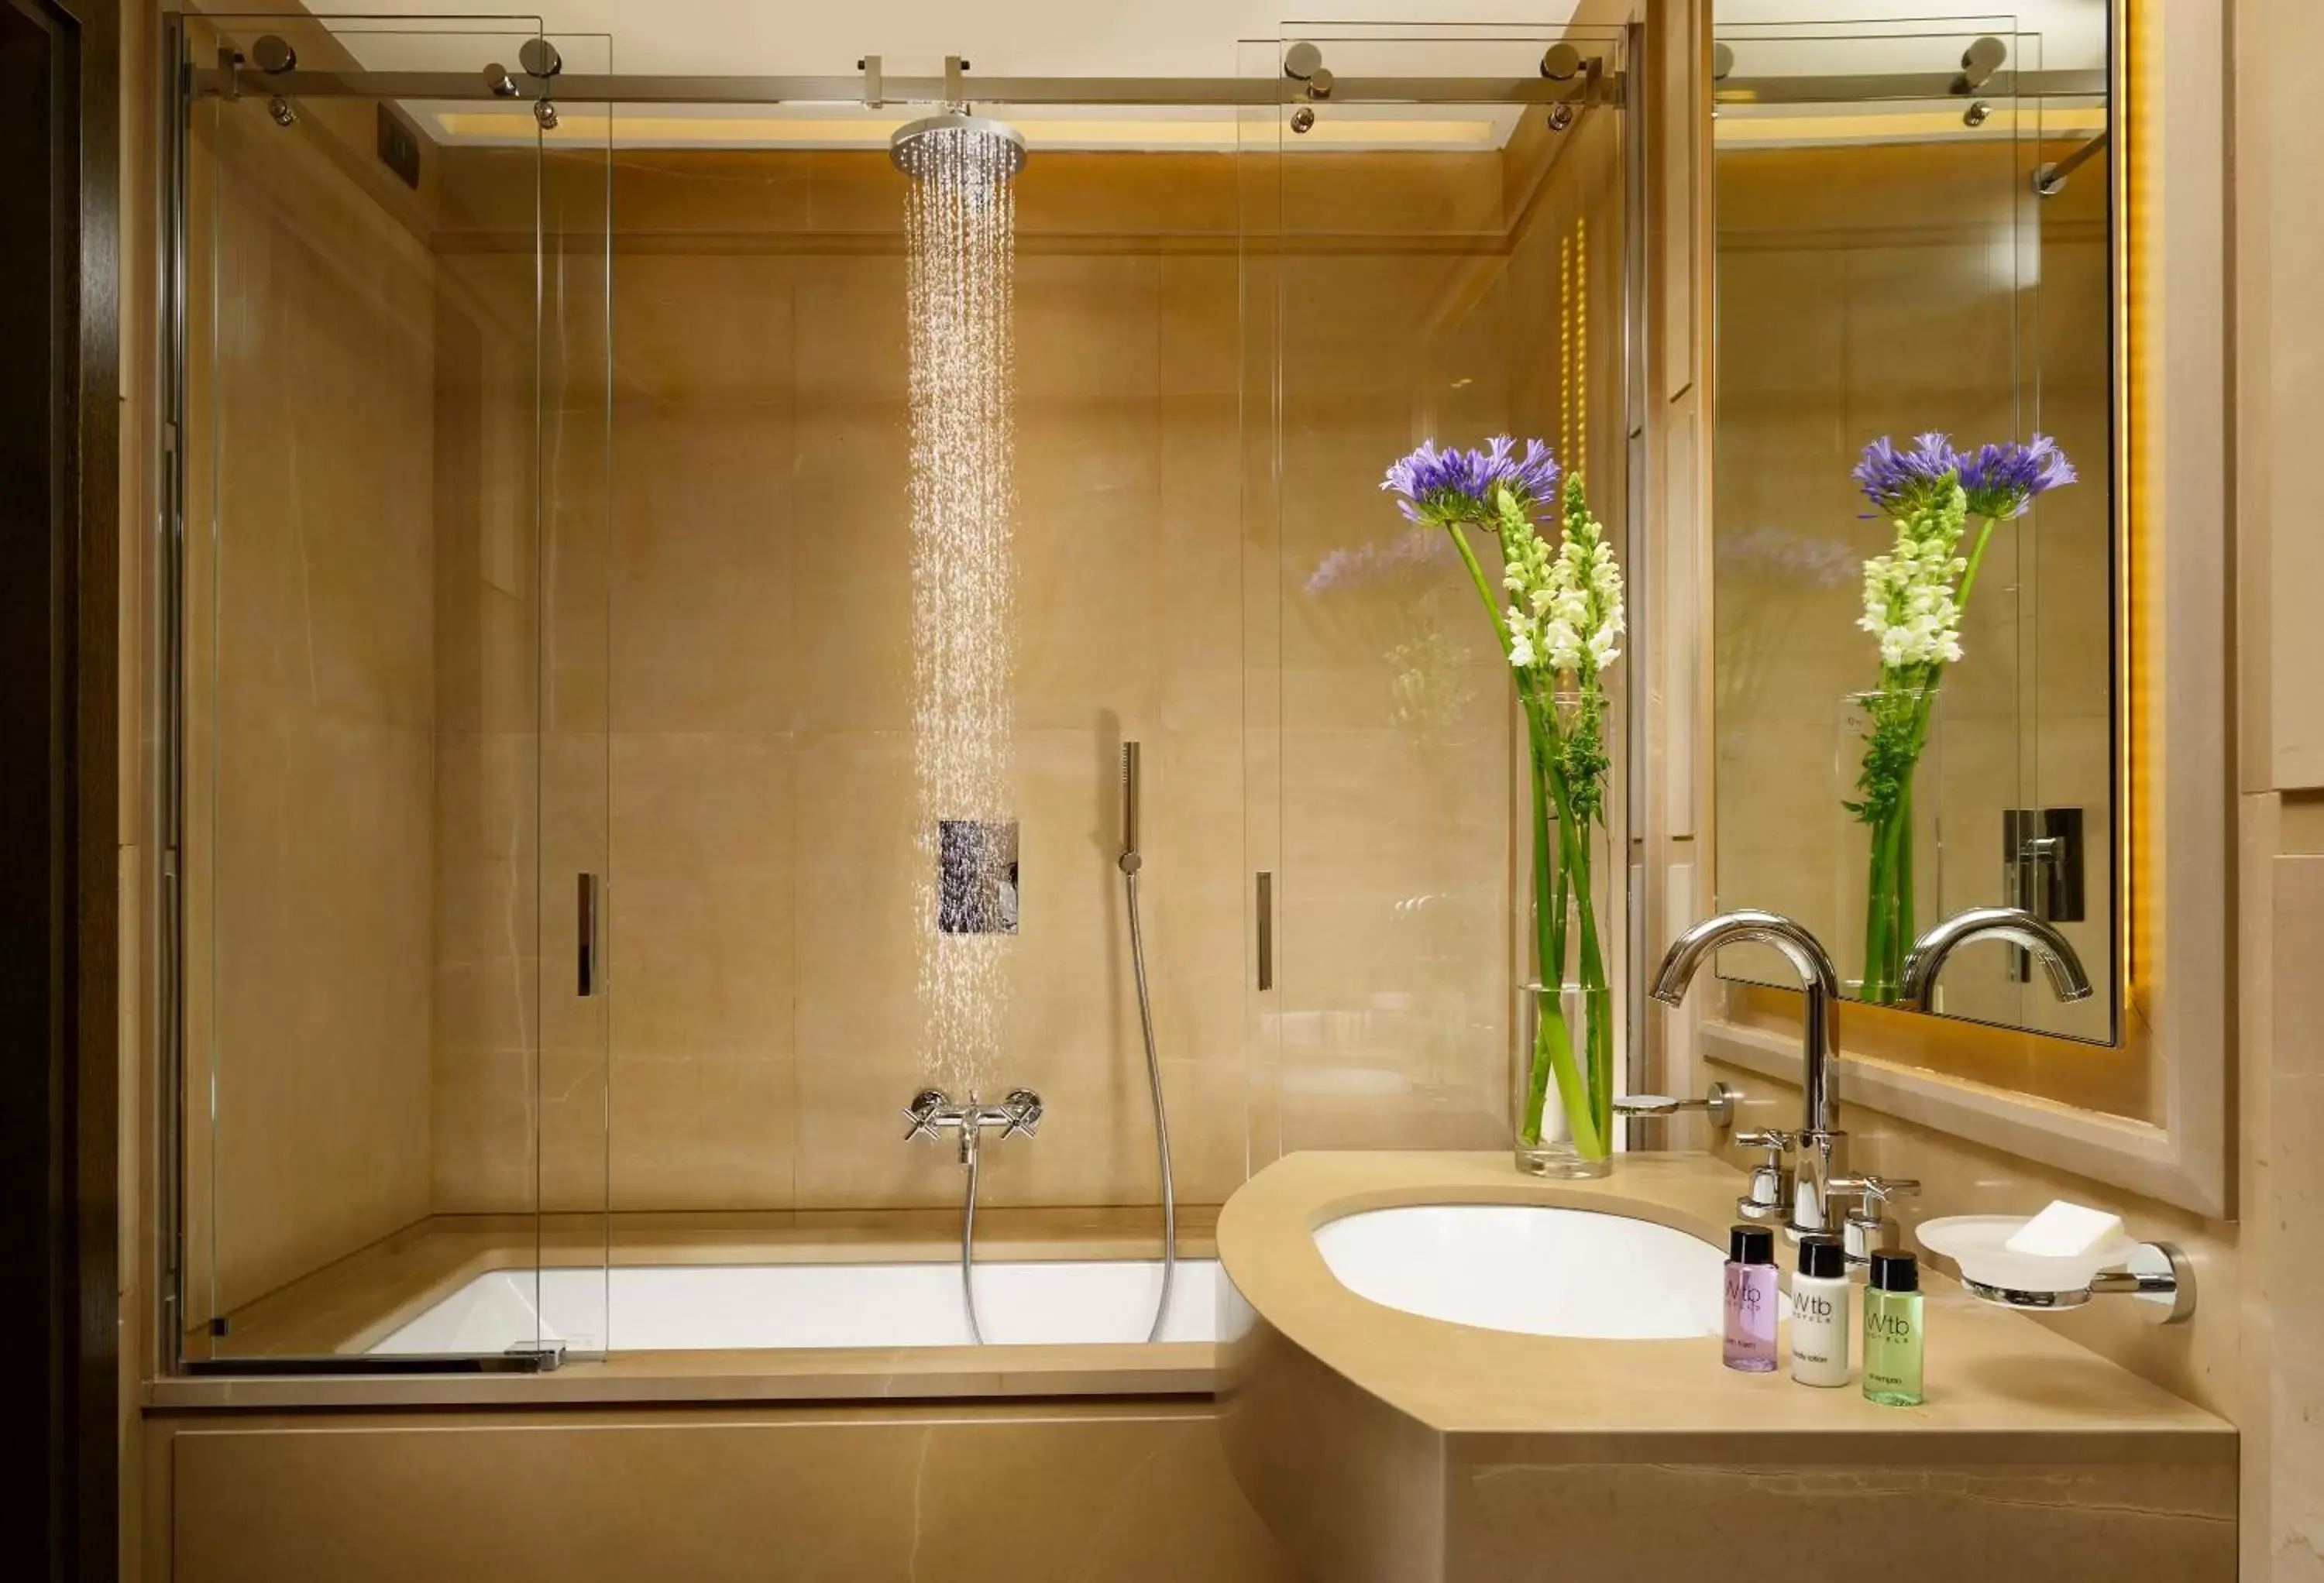 Bathroom in Hotel Balestri - WTB Hotels